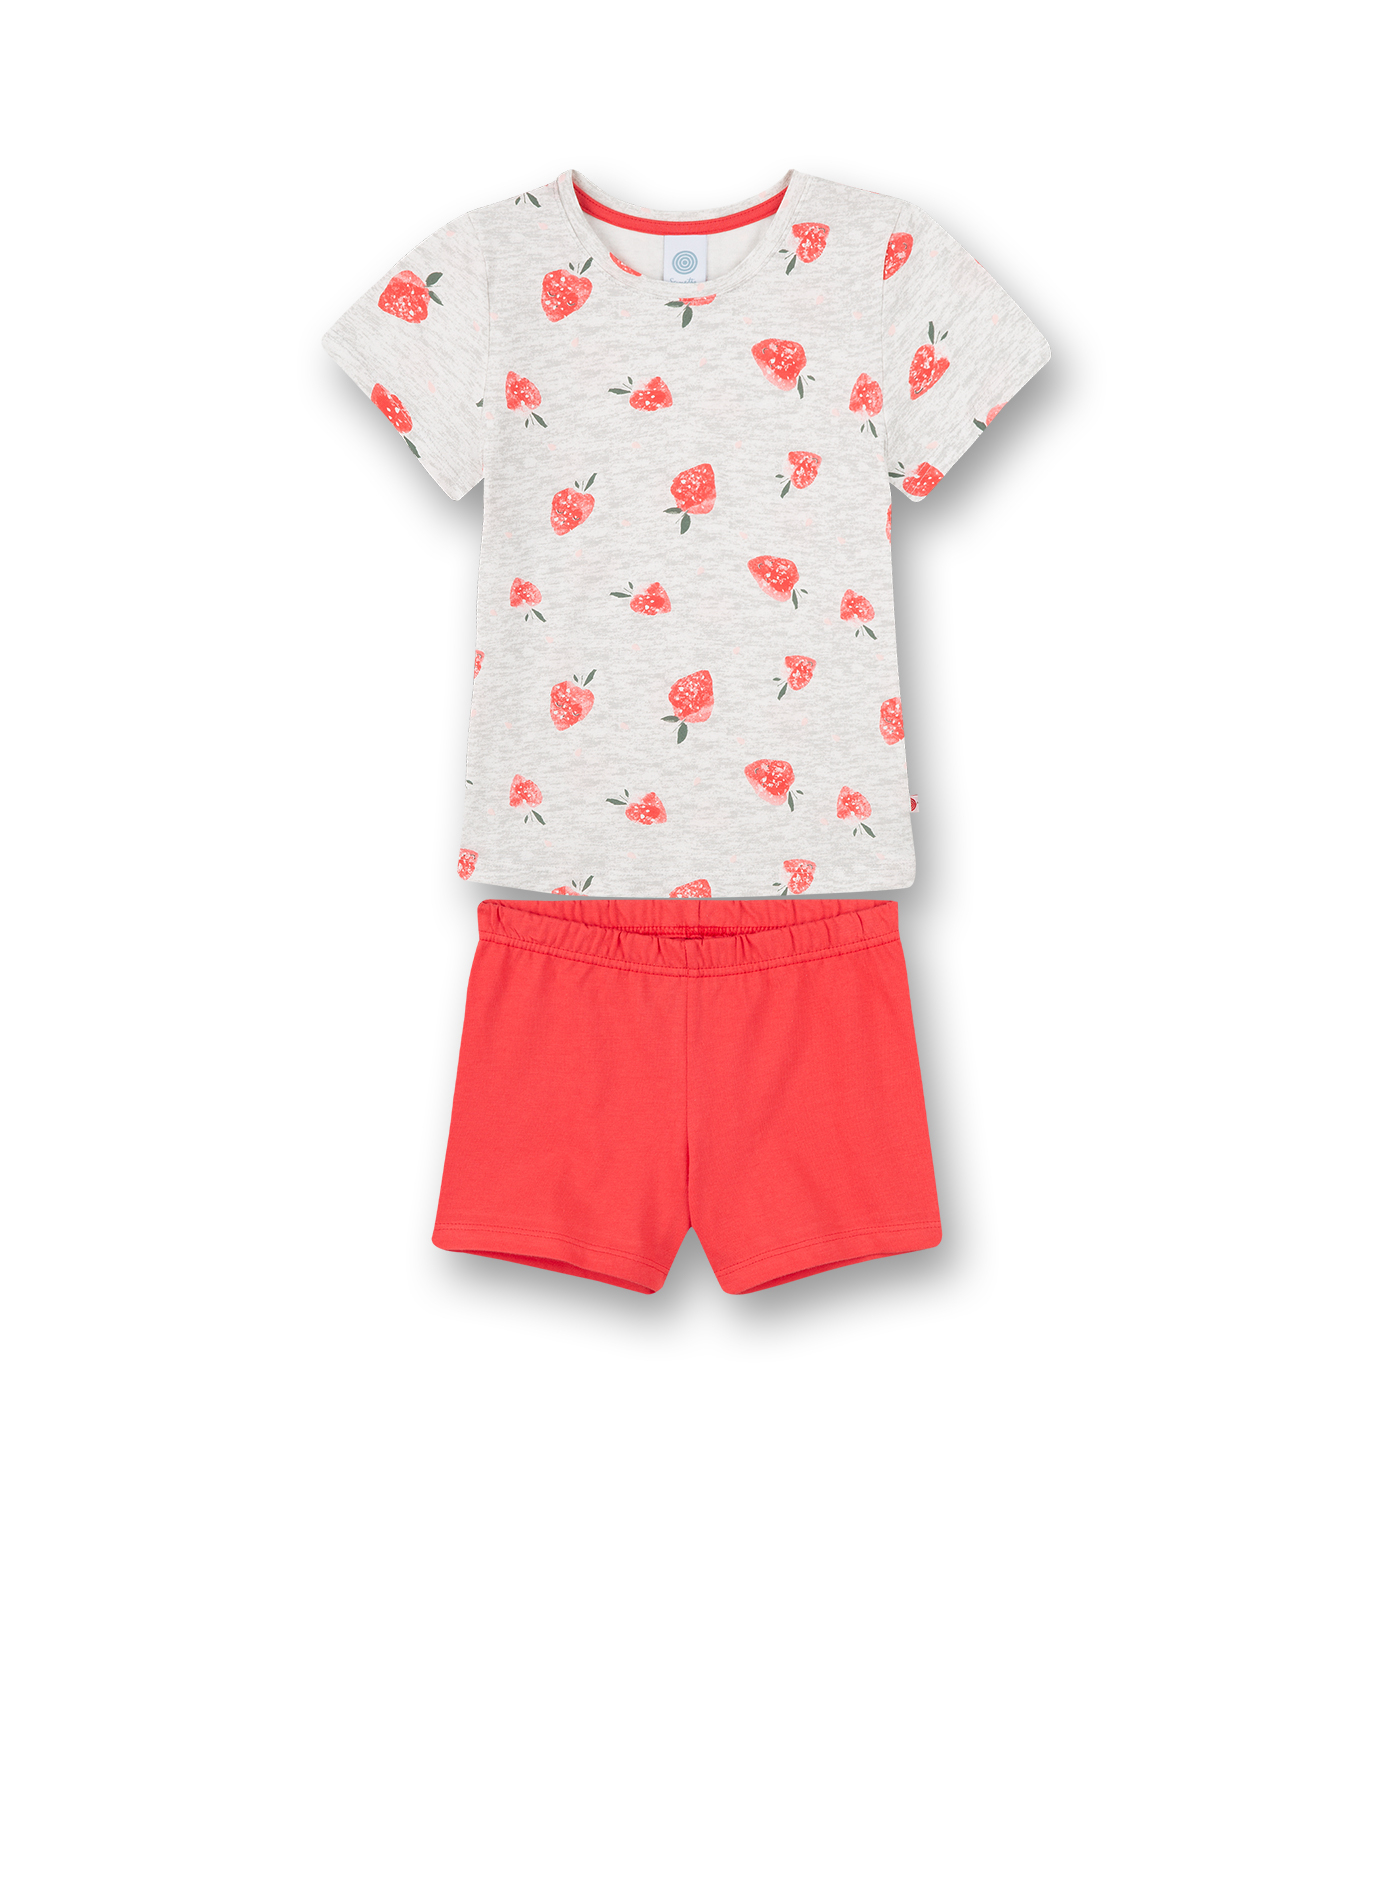 Mädchen-Schlafanzug kurz Graumelange Erdbeer-Allover Strawberry Field